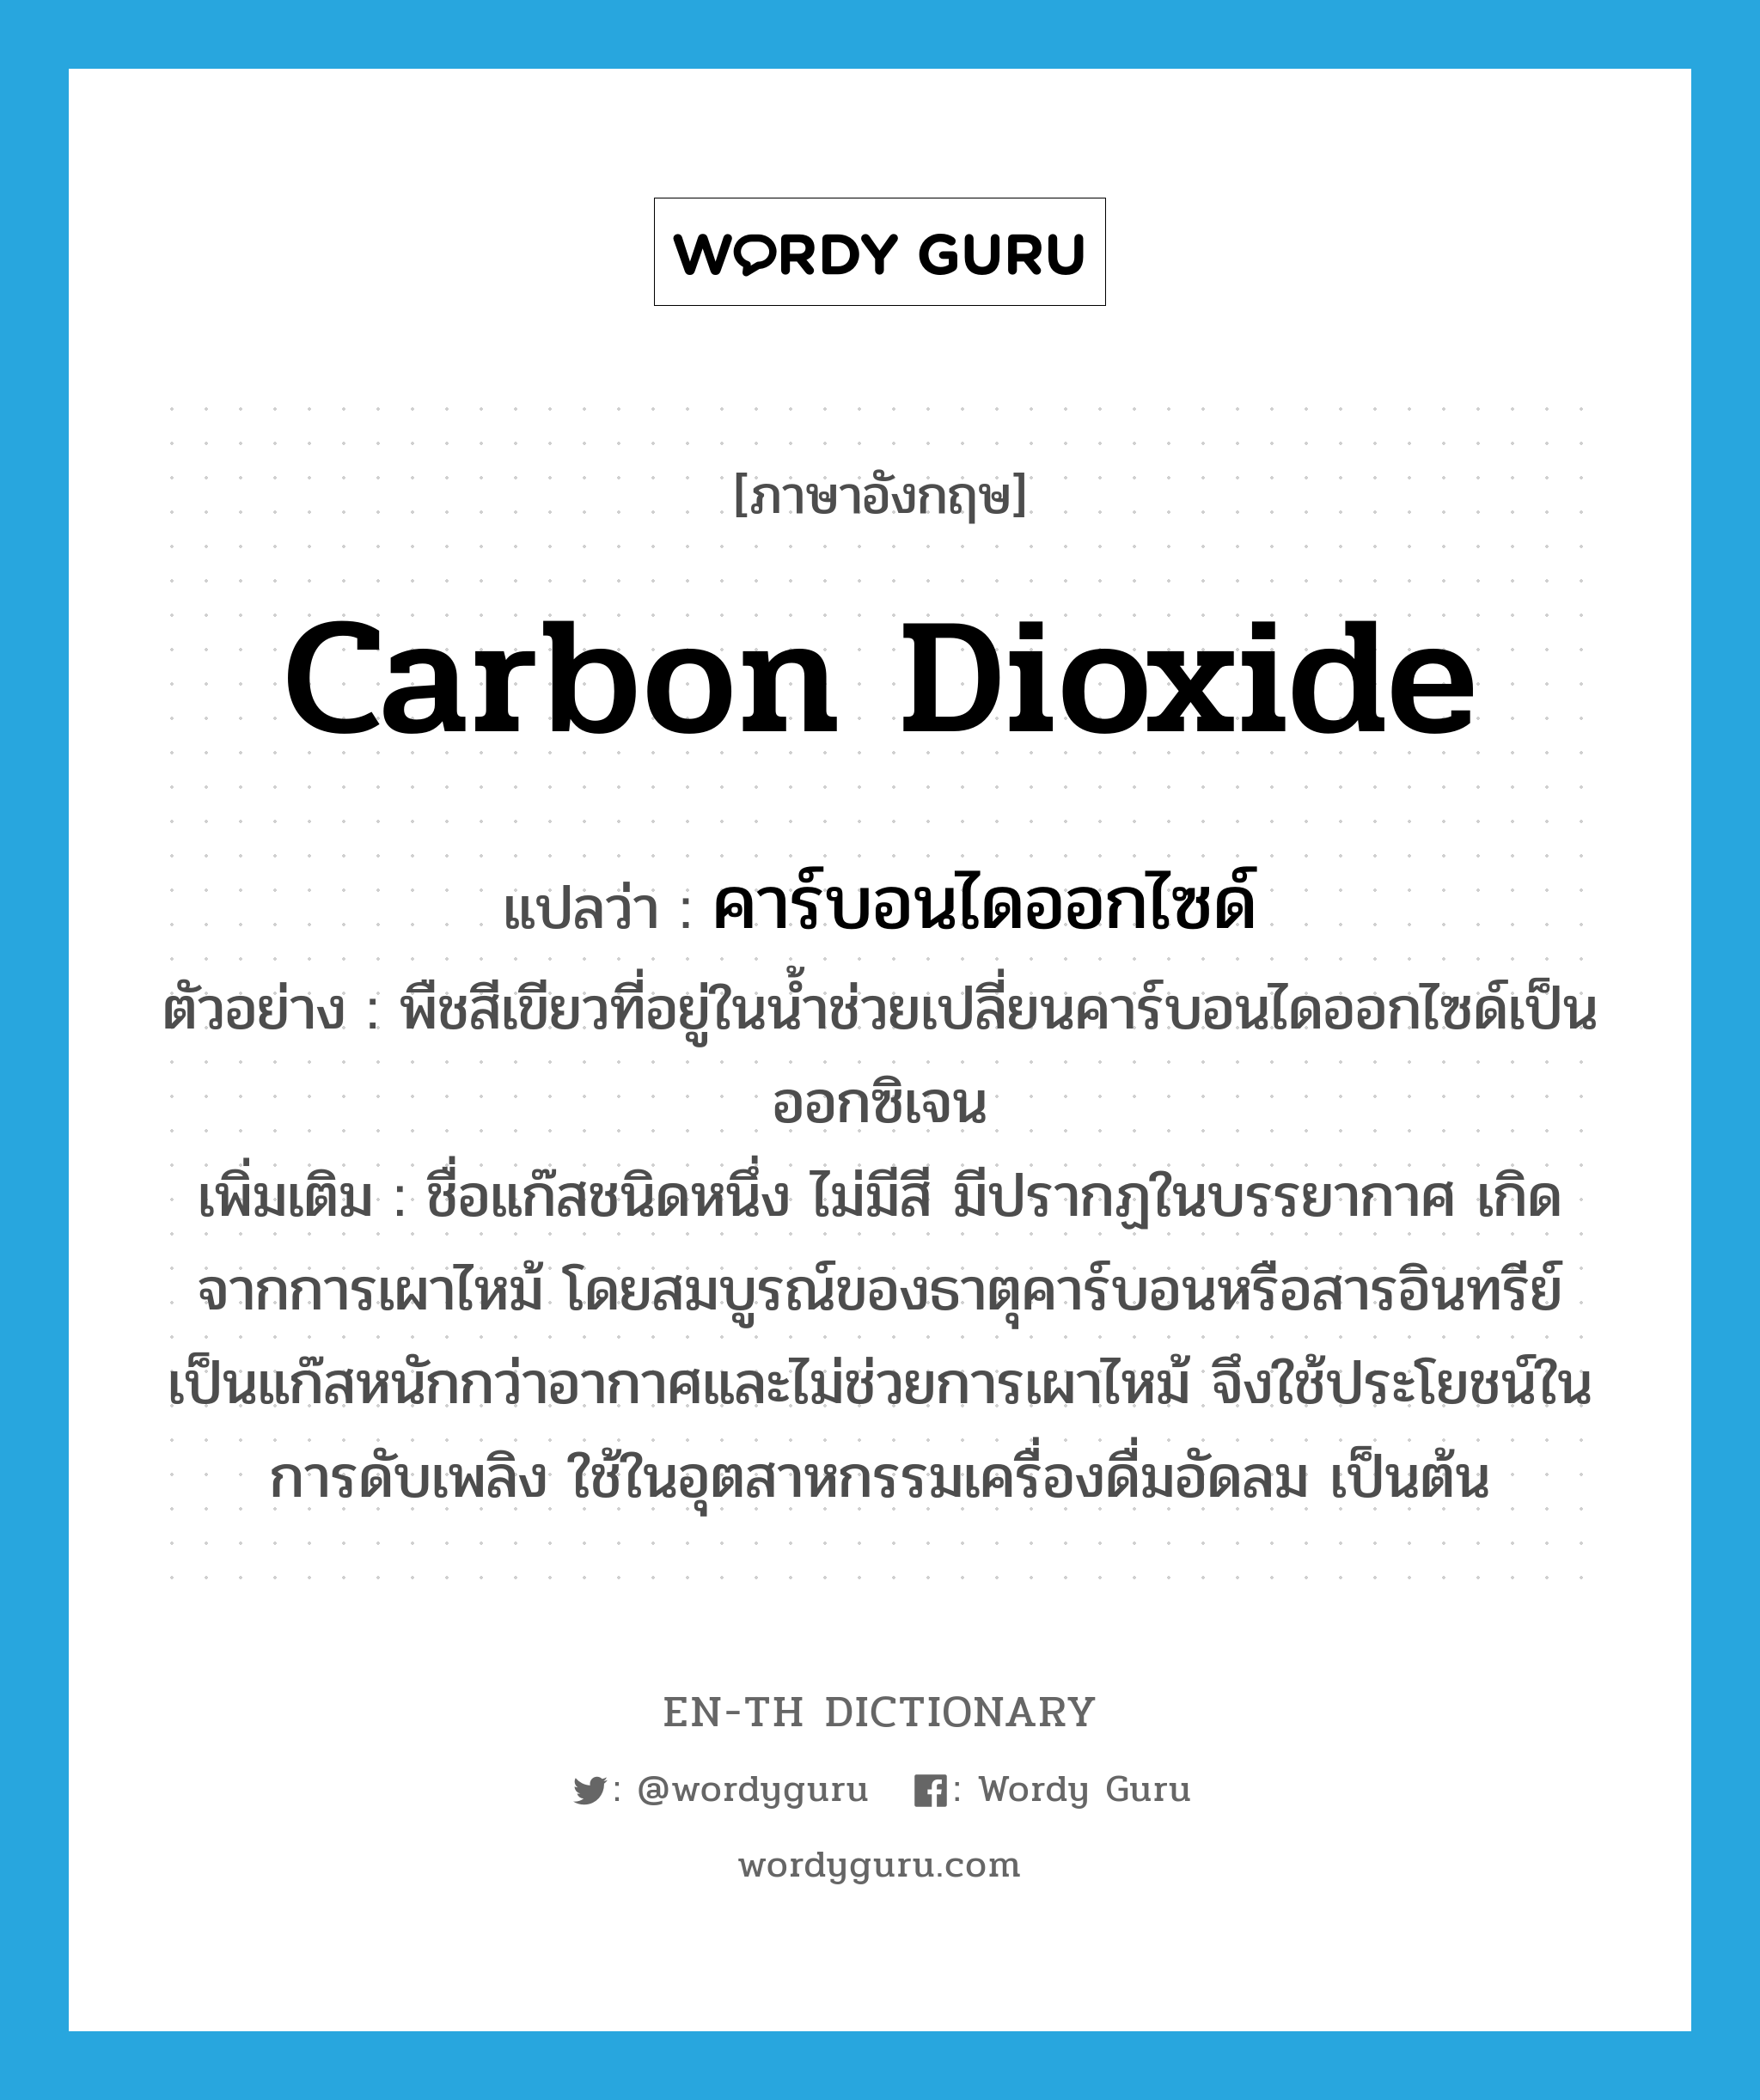 carbon dioxide แปลว่า?, คำศัพท์ภาษาอังกฤษ carbon dioxide แปลว่า คาร์บอนไดออกไซด์ ประเภท N ตัวอย่าง พืชสีเขียวที่อยู่ในน้ำช่วยเปลี่ยนคาร์บอนไดออกไซด์เป็นออกซิเจน เพิ่มเติม ชื่อแก๊สชนิดหนึ่ง ไม่มีสี มีปรากฏในบรรยากาศ เกิดจากการเผาไหม้ โดยสมบูรณ์ของธาตุคาร์บอนหรือสารอินทรีย์ เป็นแก๊สหนักกว่าอากาศและไม่ช่วยการเผาไหม้ จึงใช้ประโยชน์ในการดับเพลิง ใช้ในอุตสาหกรรมเครื่องดื่มอัดลม เป็นต้น หมวด N